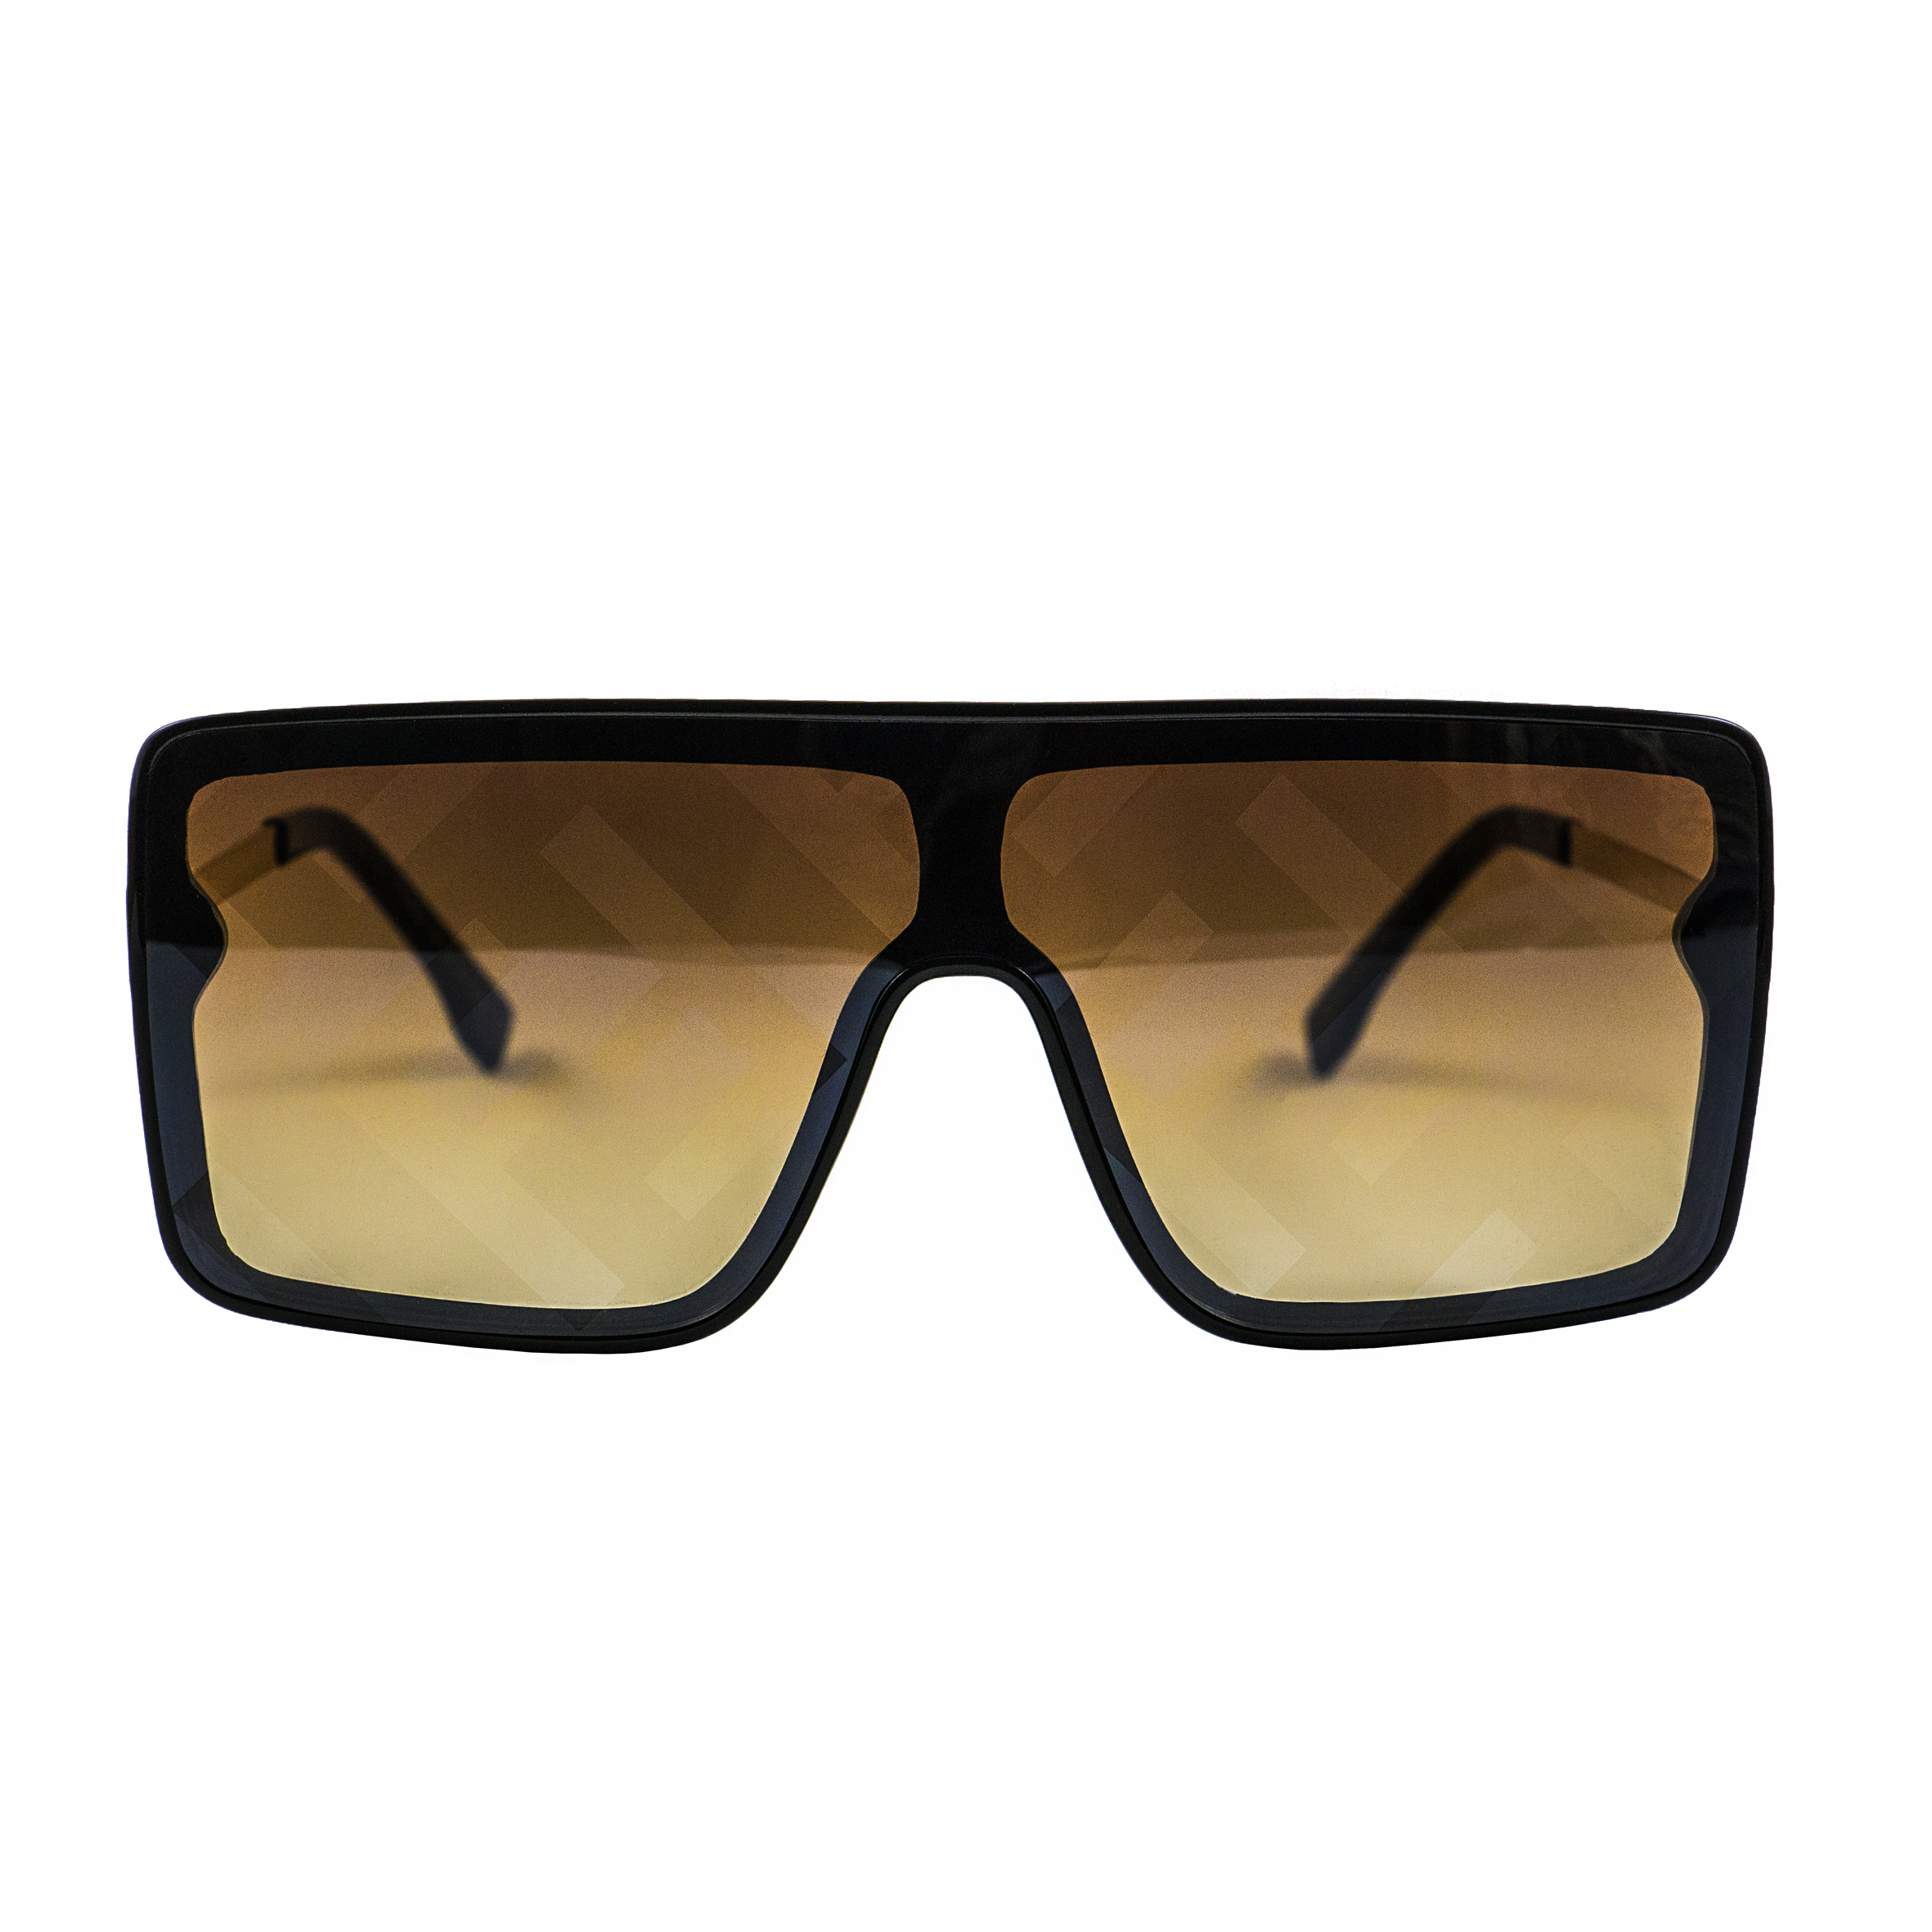 عینک آفتابی فندی مدل 6654 COL.3 66-18 142